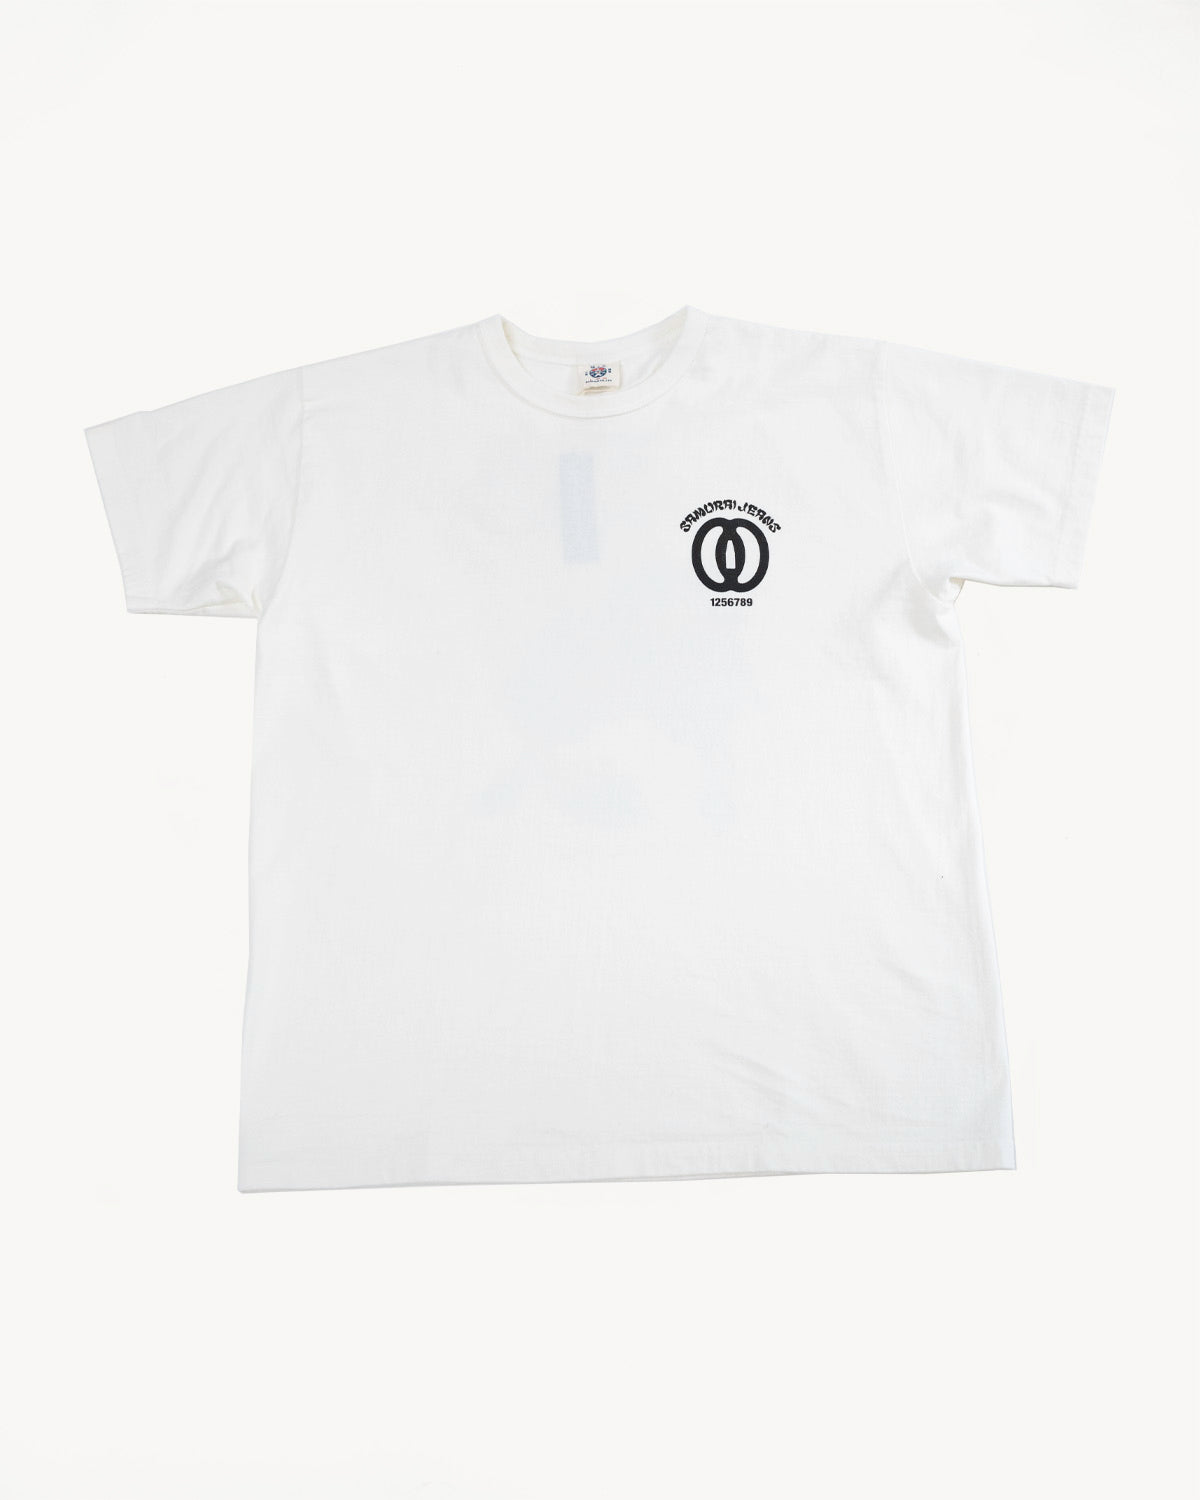 Vintage Supreme Circle Logo Tee T-Shirt White Size L